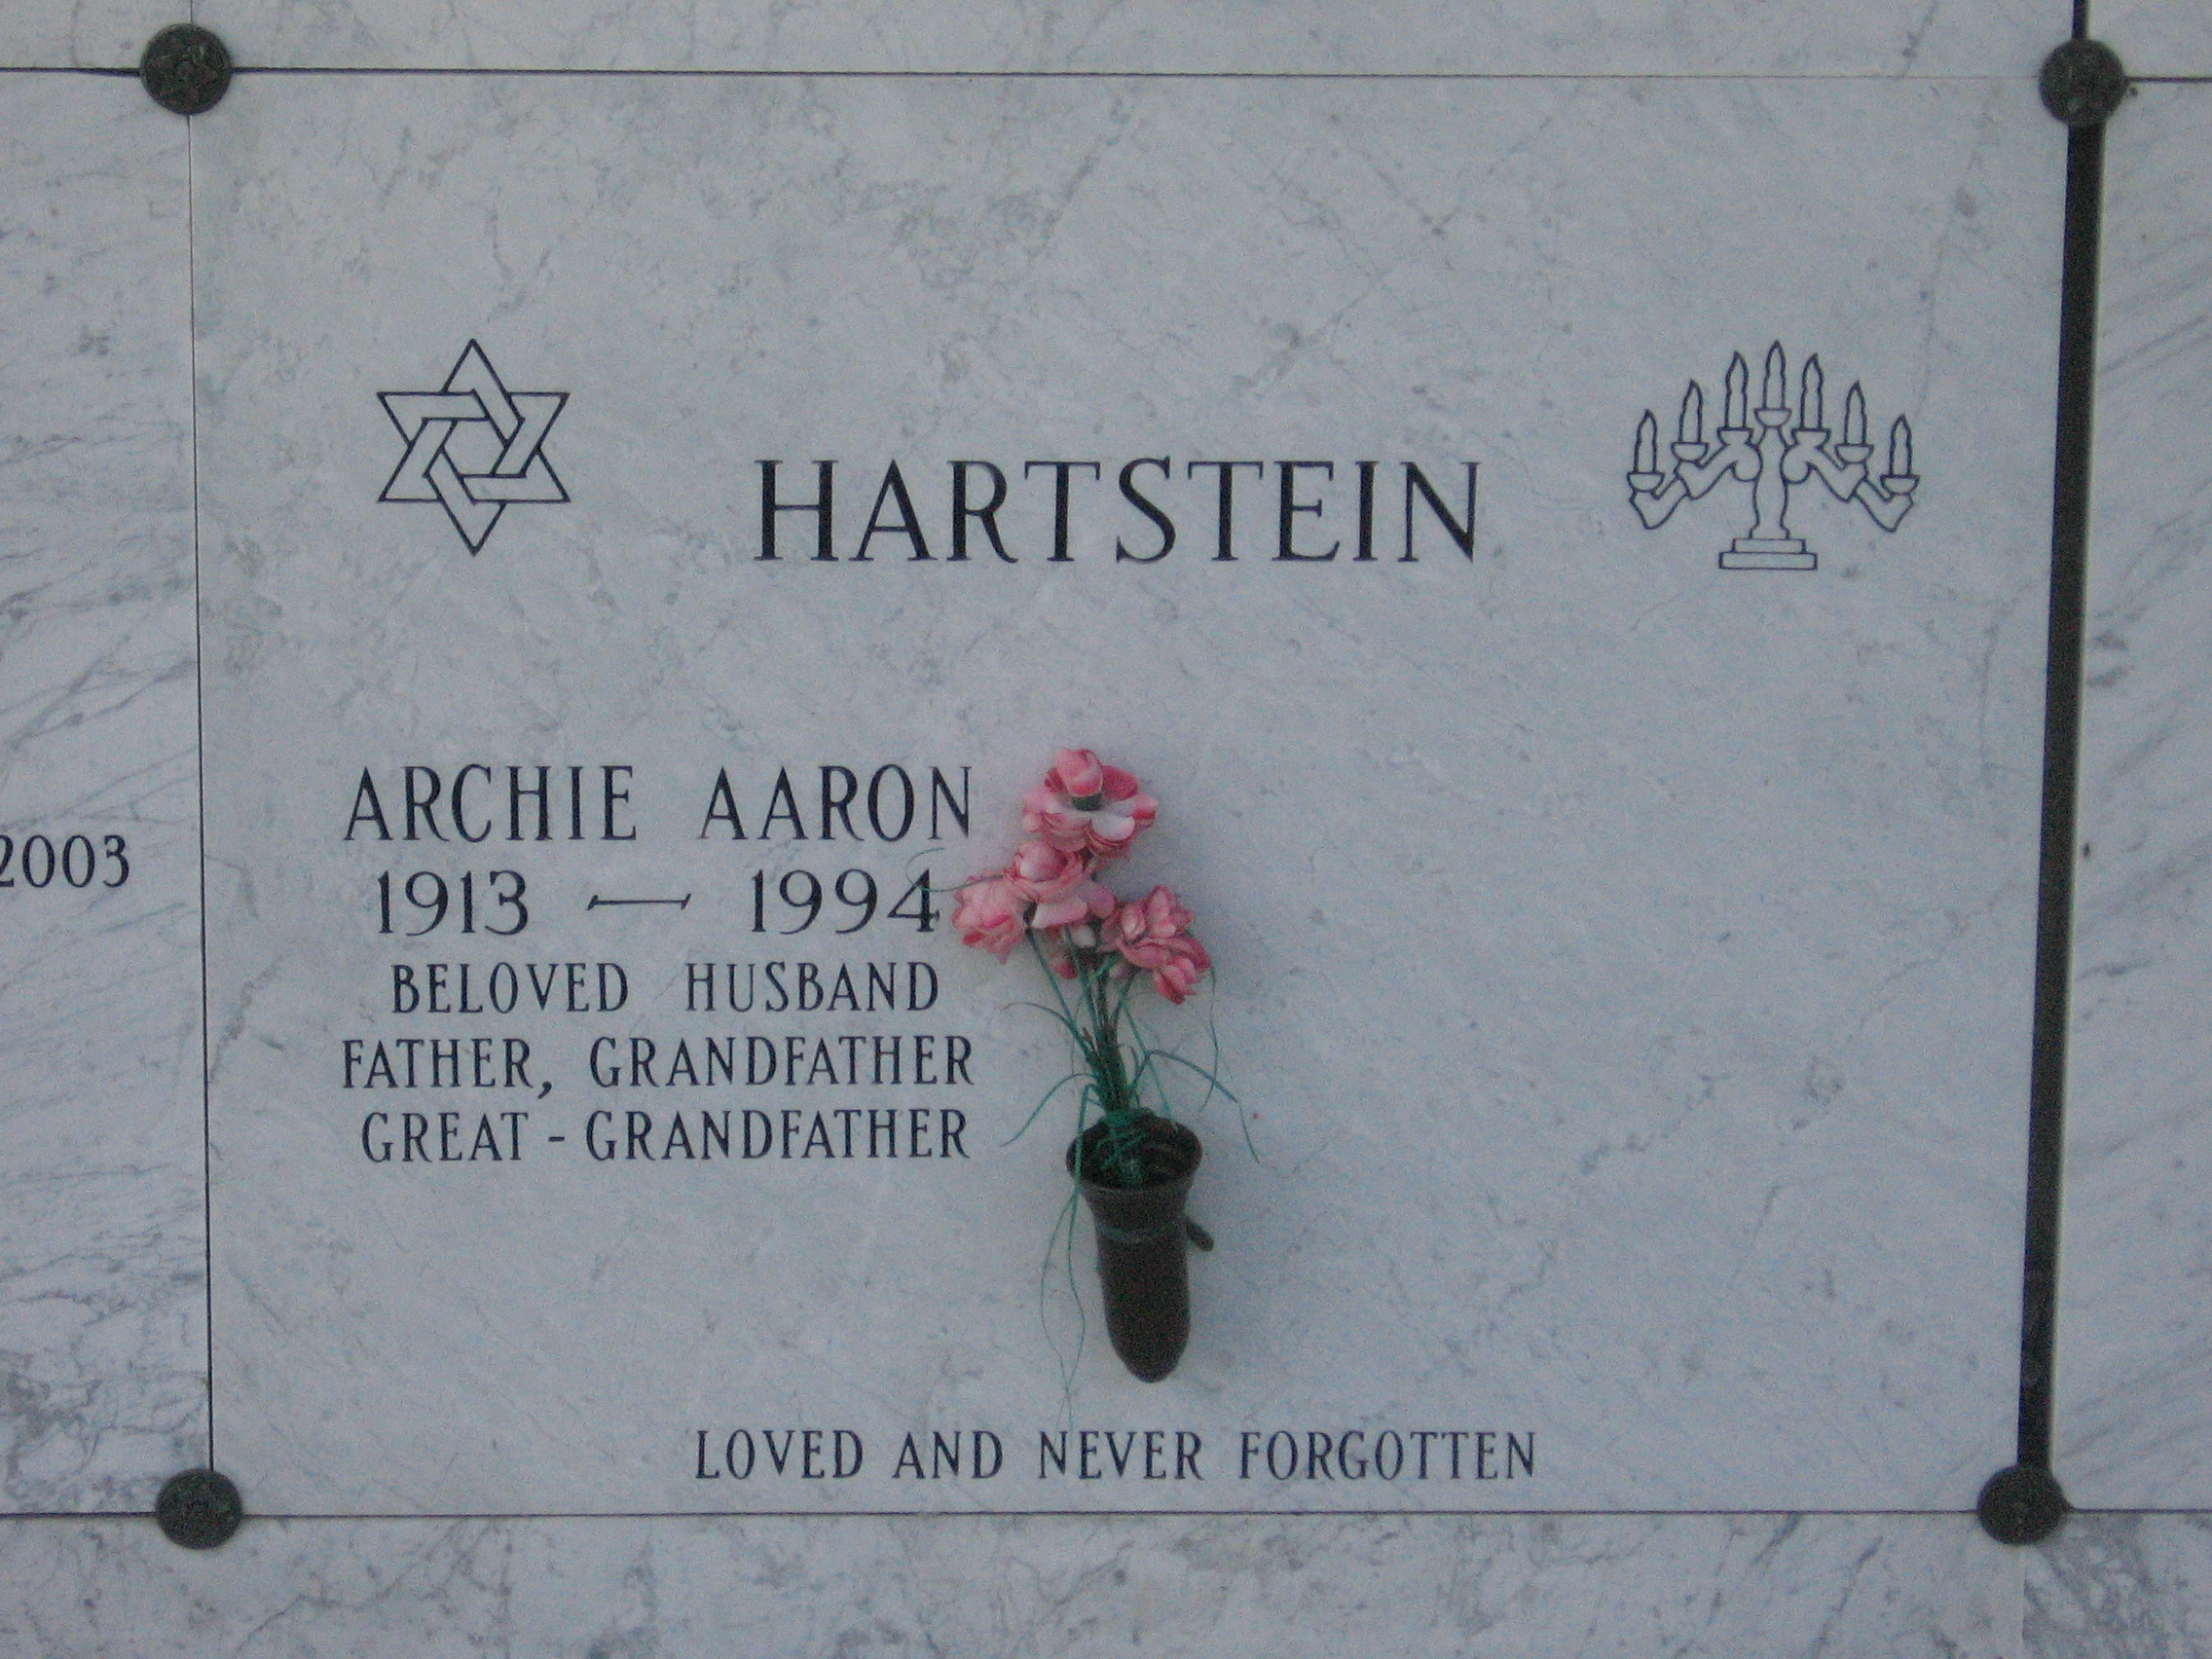 Archie Aaron Hartstein